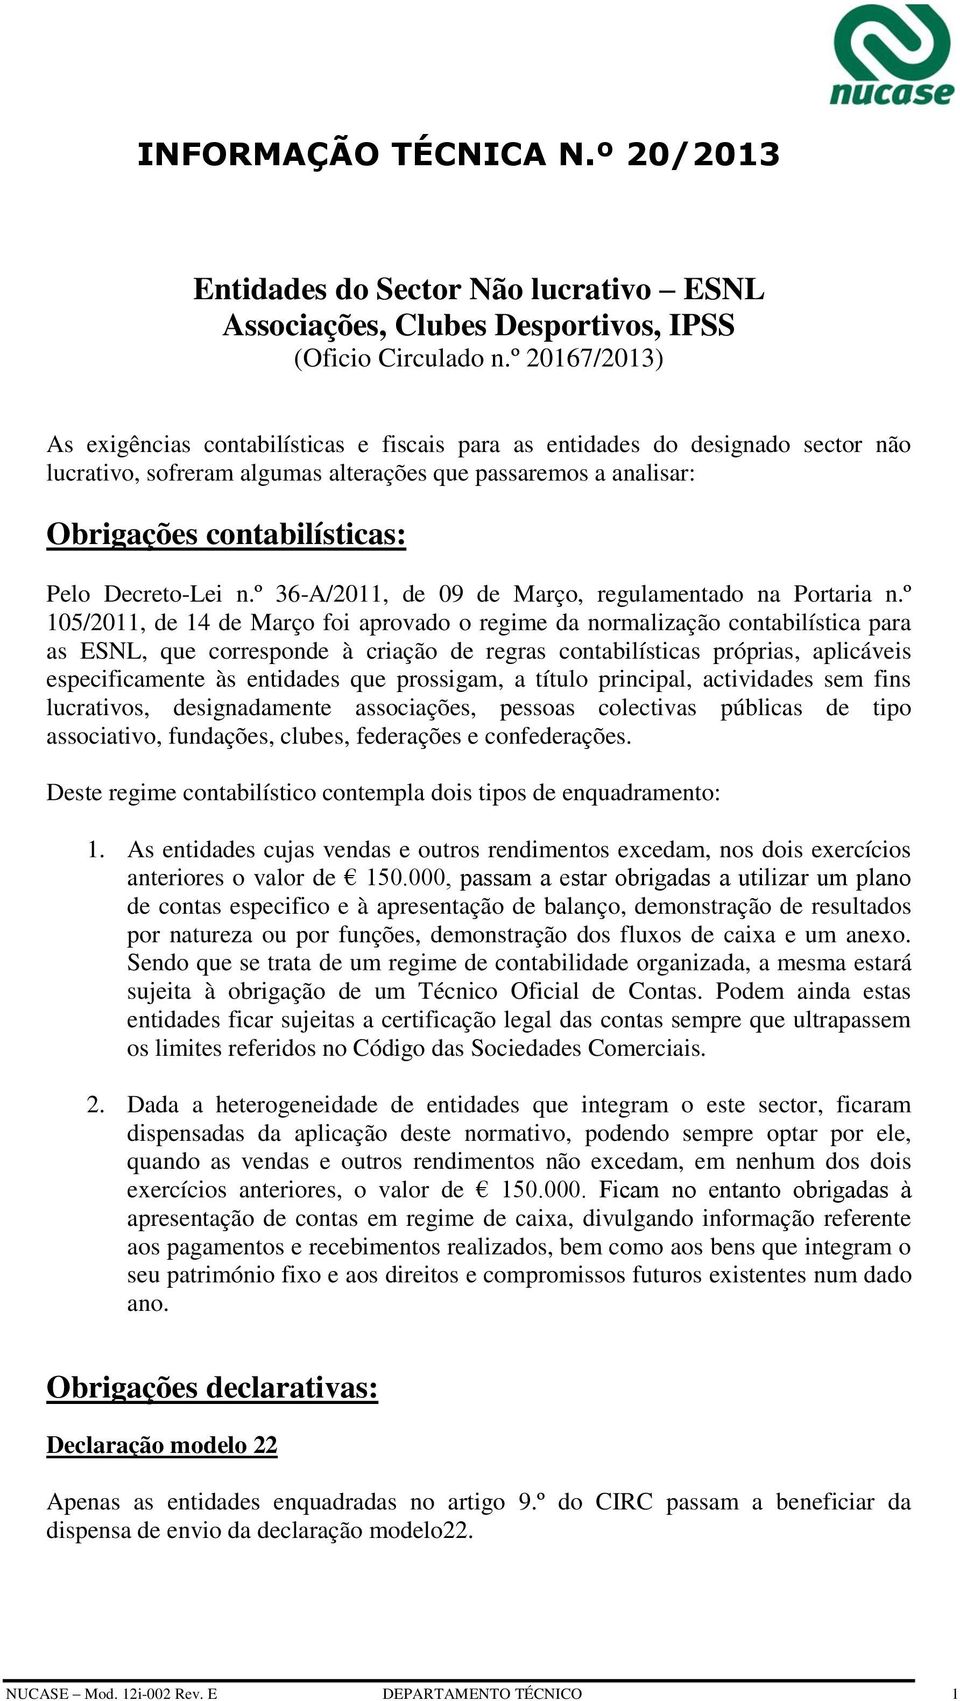 Decreto-Lei n.º 36-A/2011, de 09 de Março, regulamentado na Portaria n.